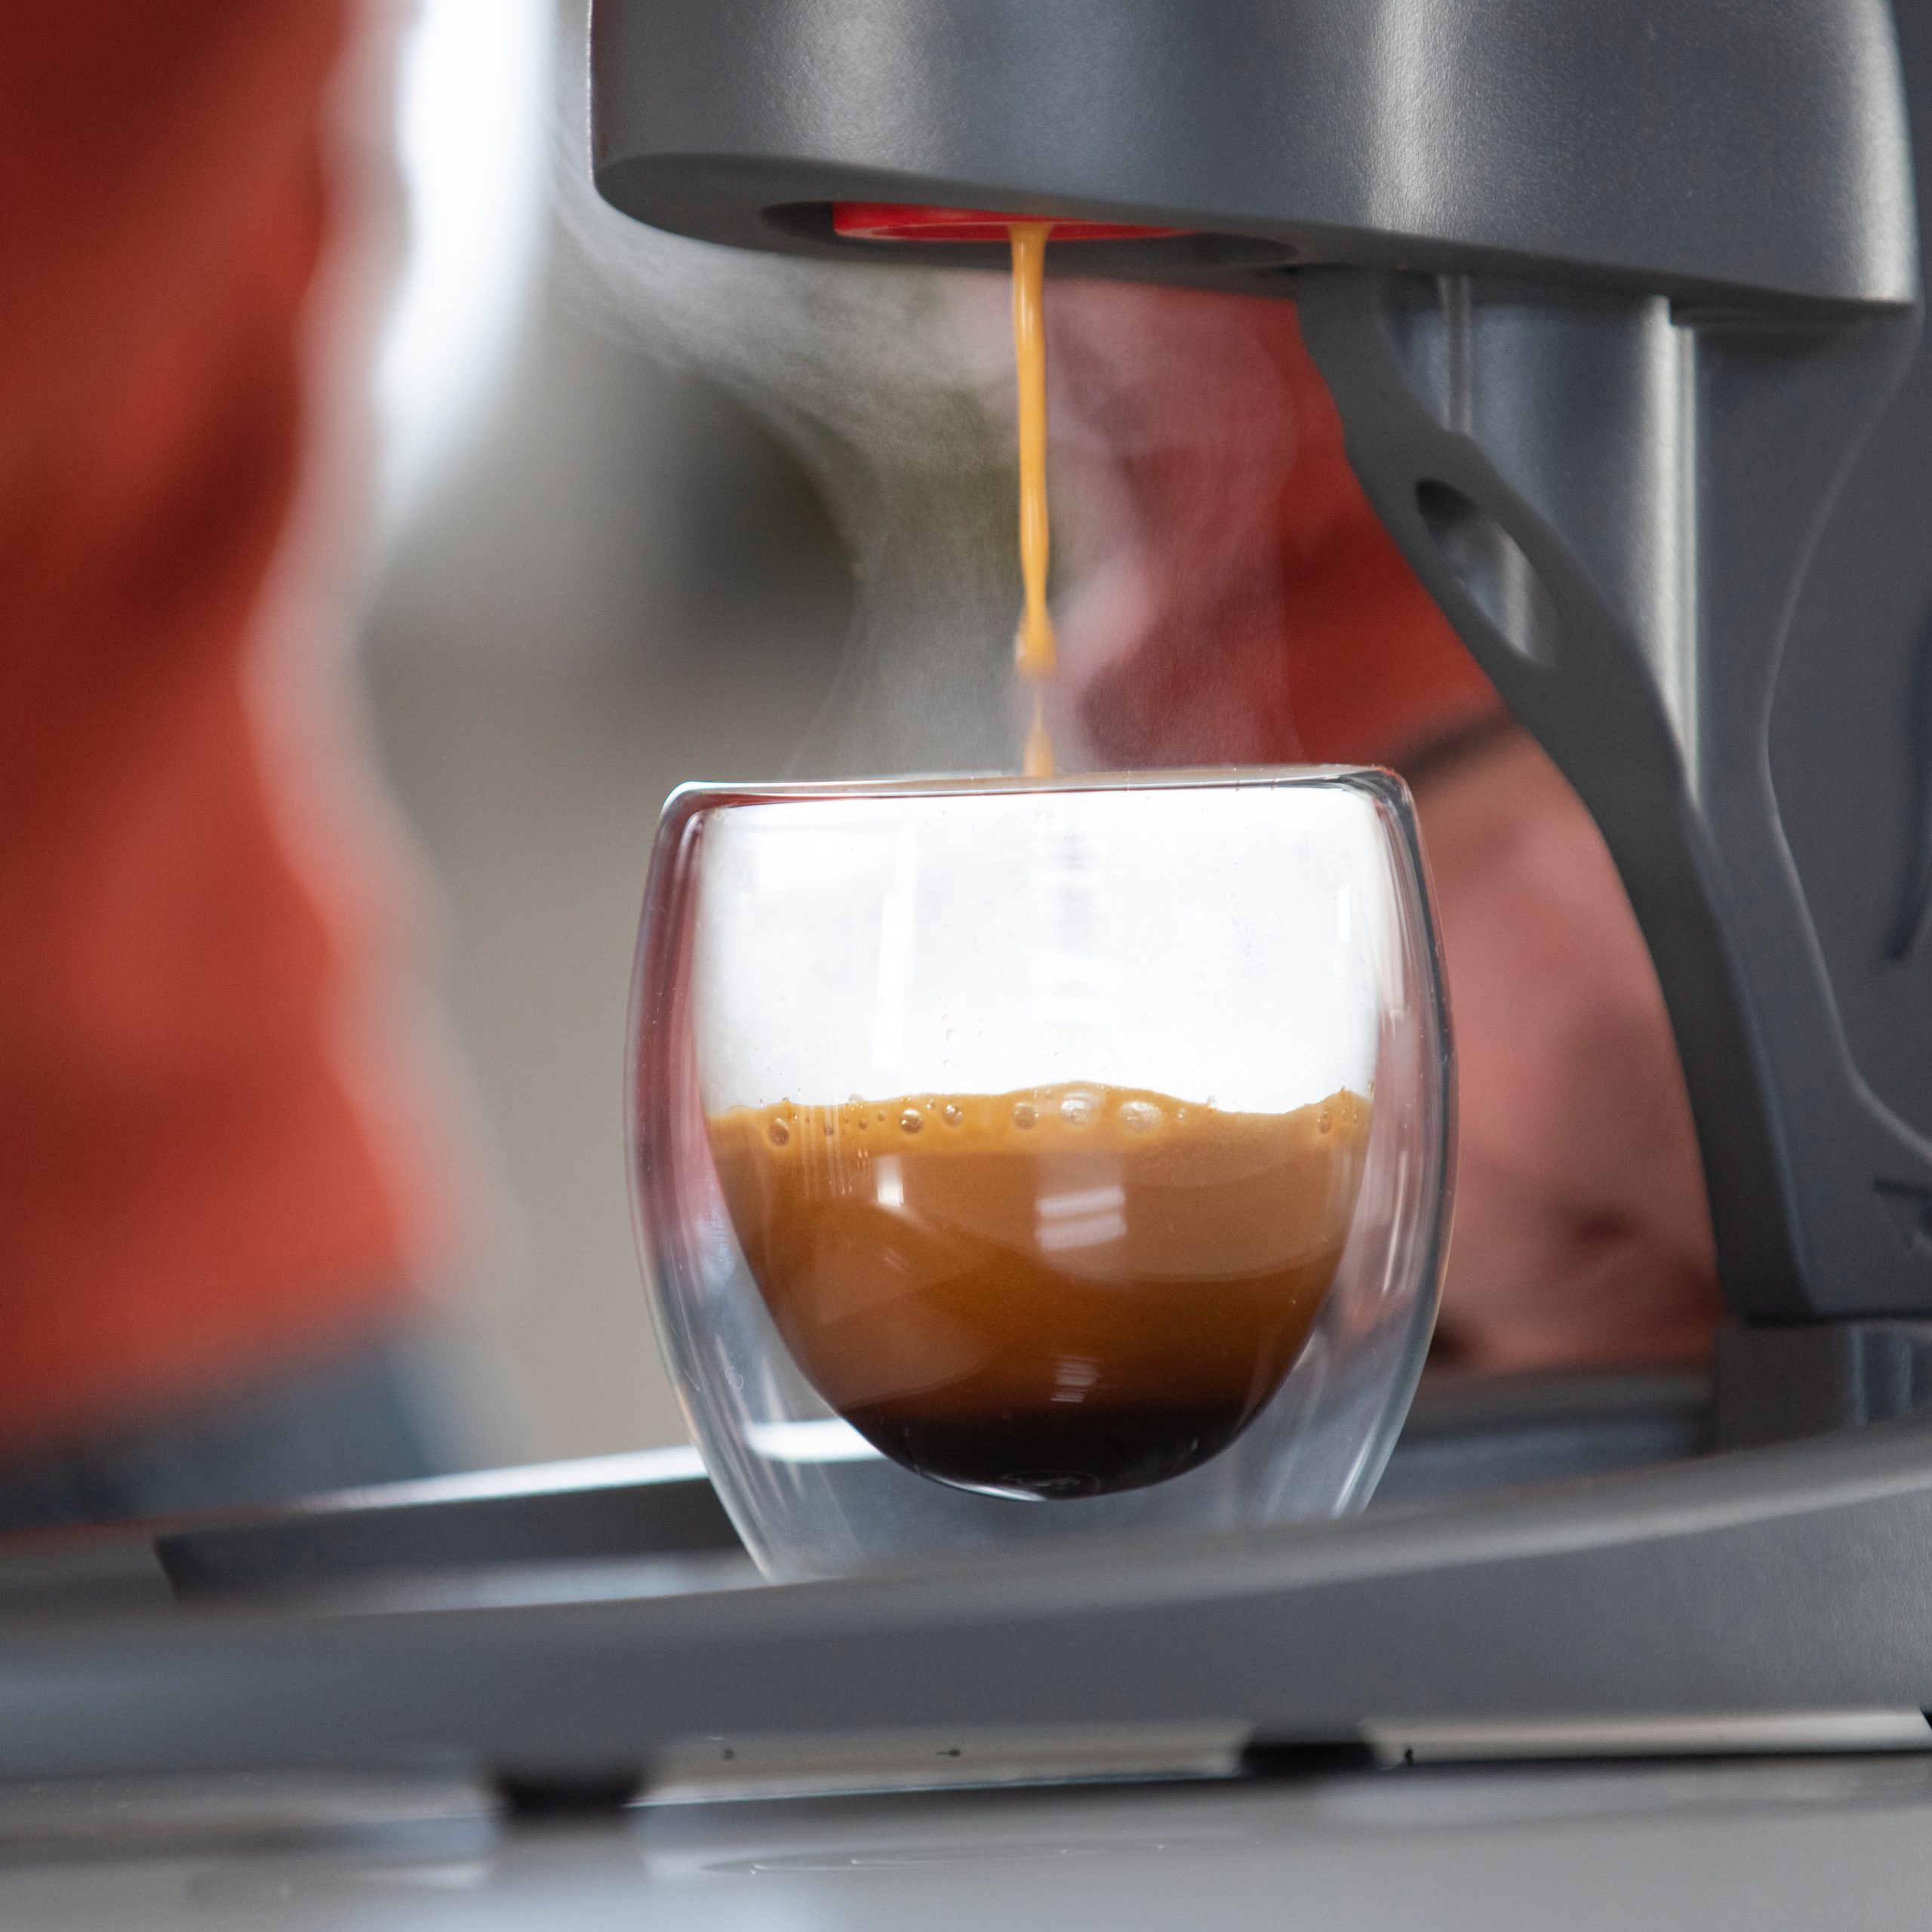 The NEO Manual Espresso Maker